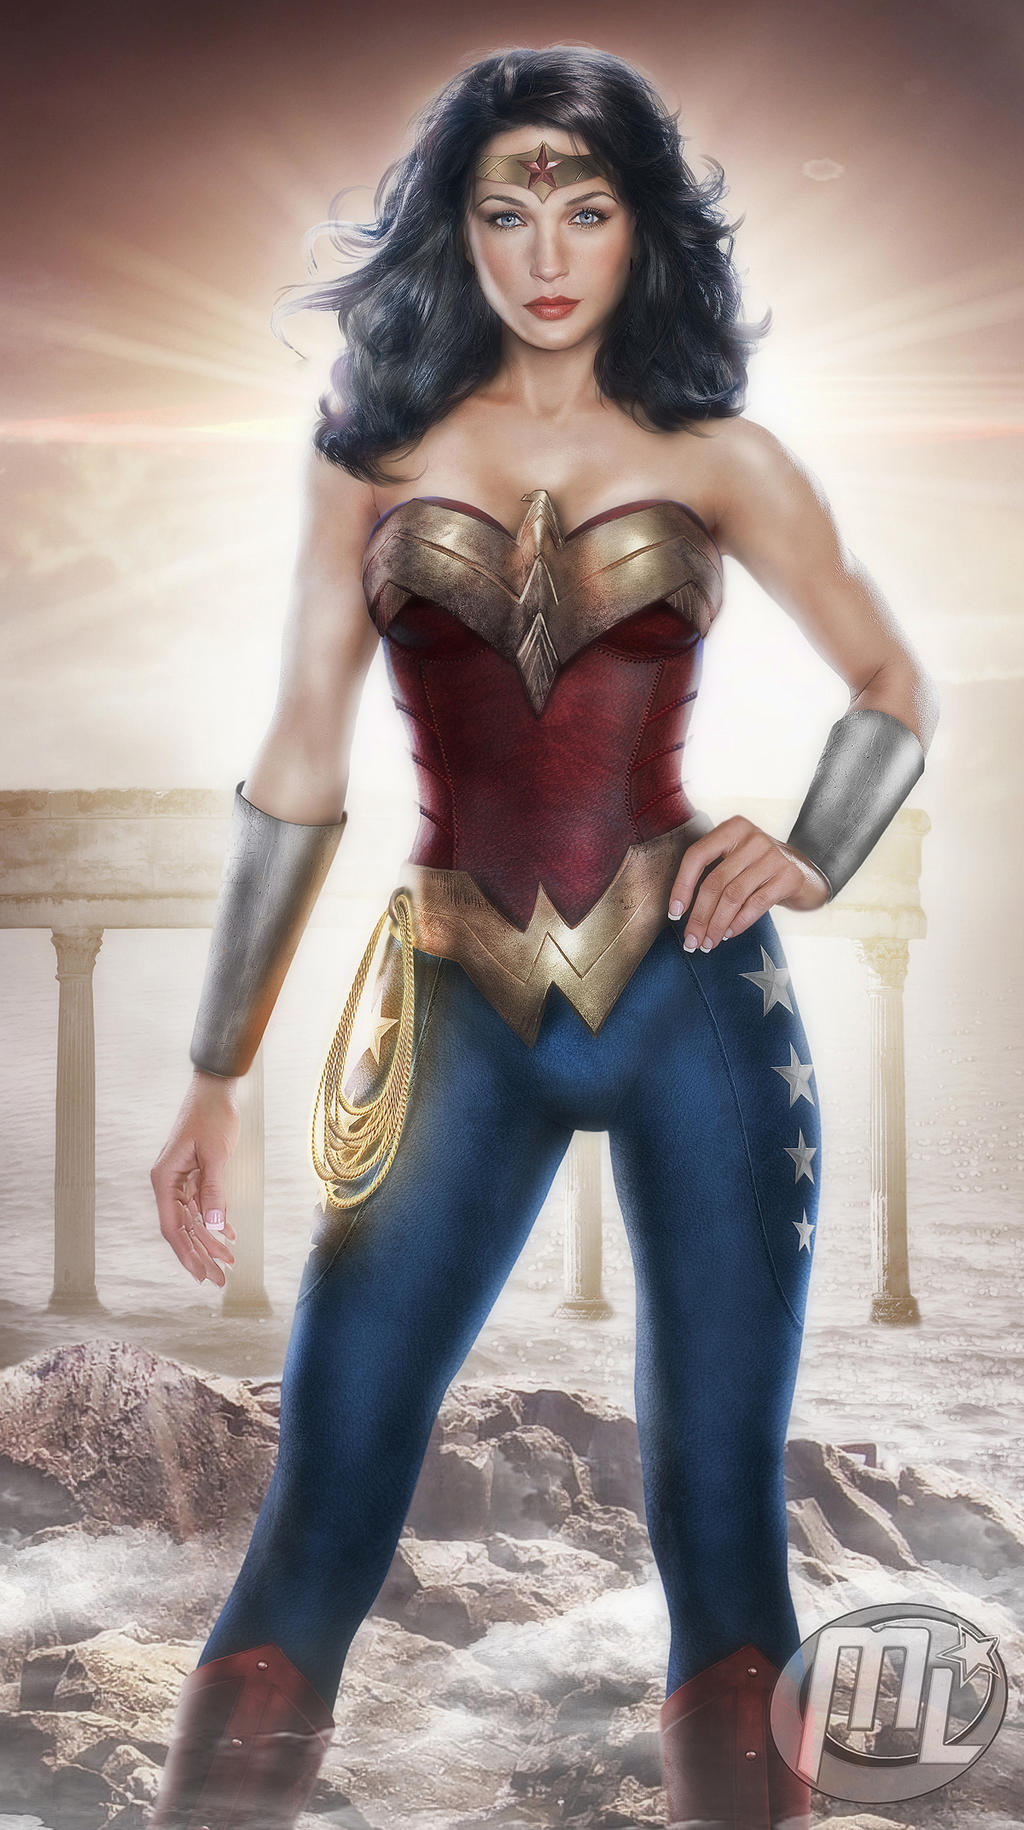 Wonder Woman as Gal Gadot